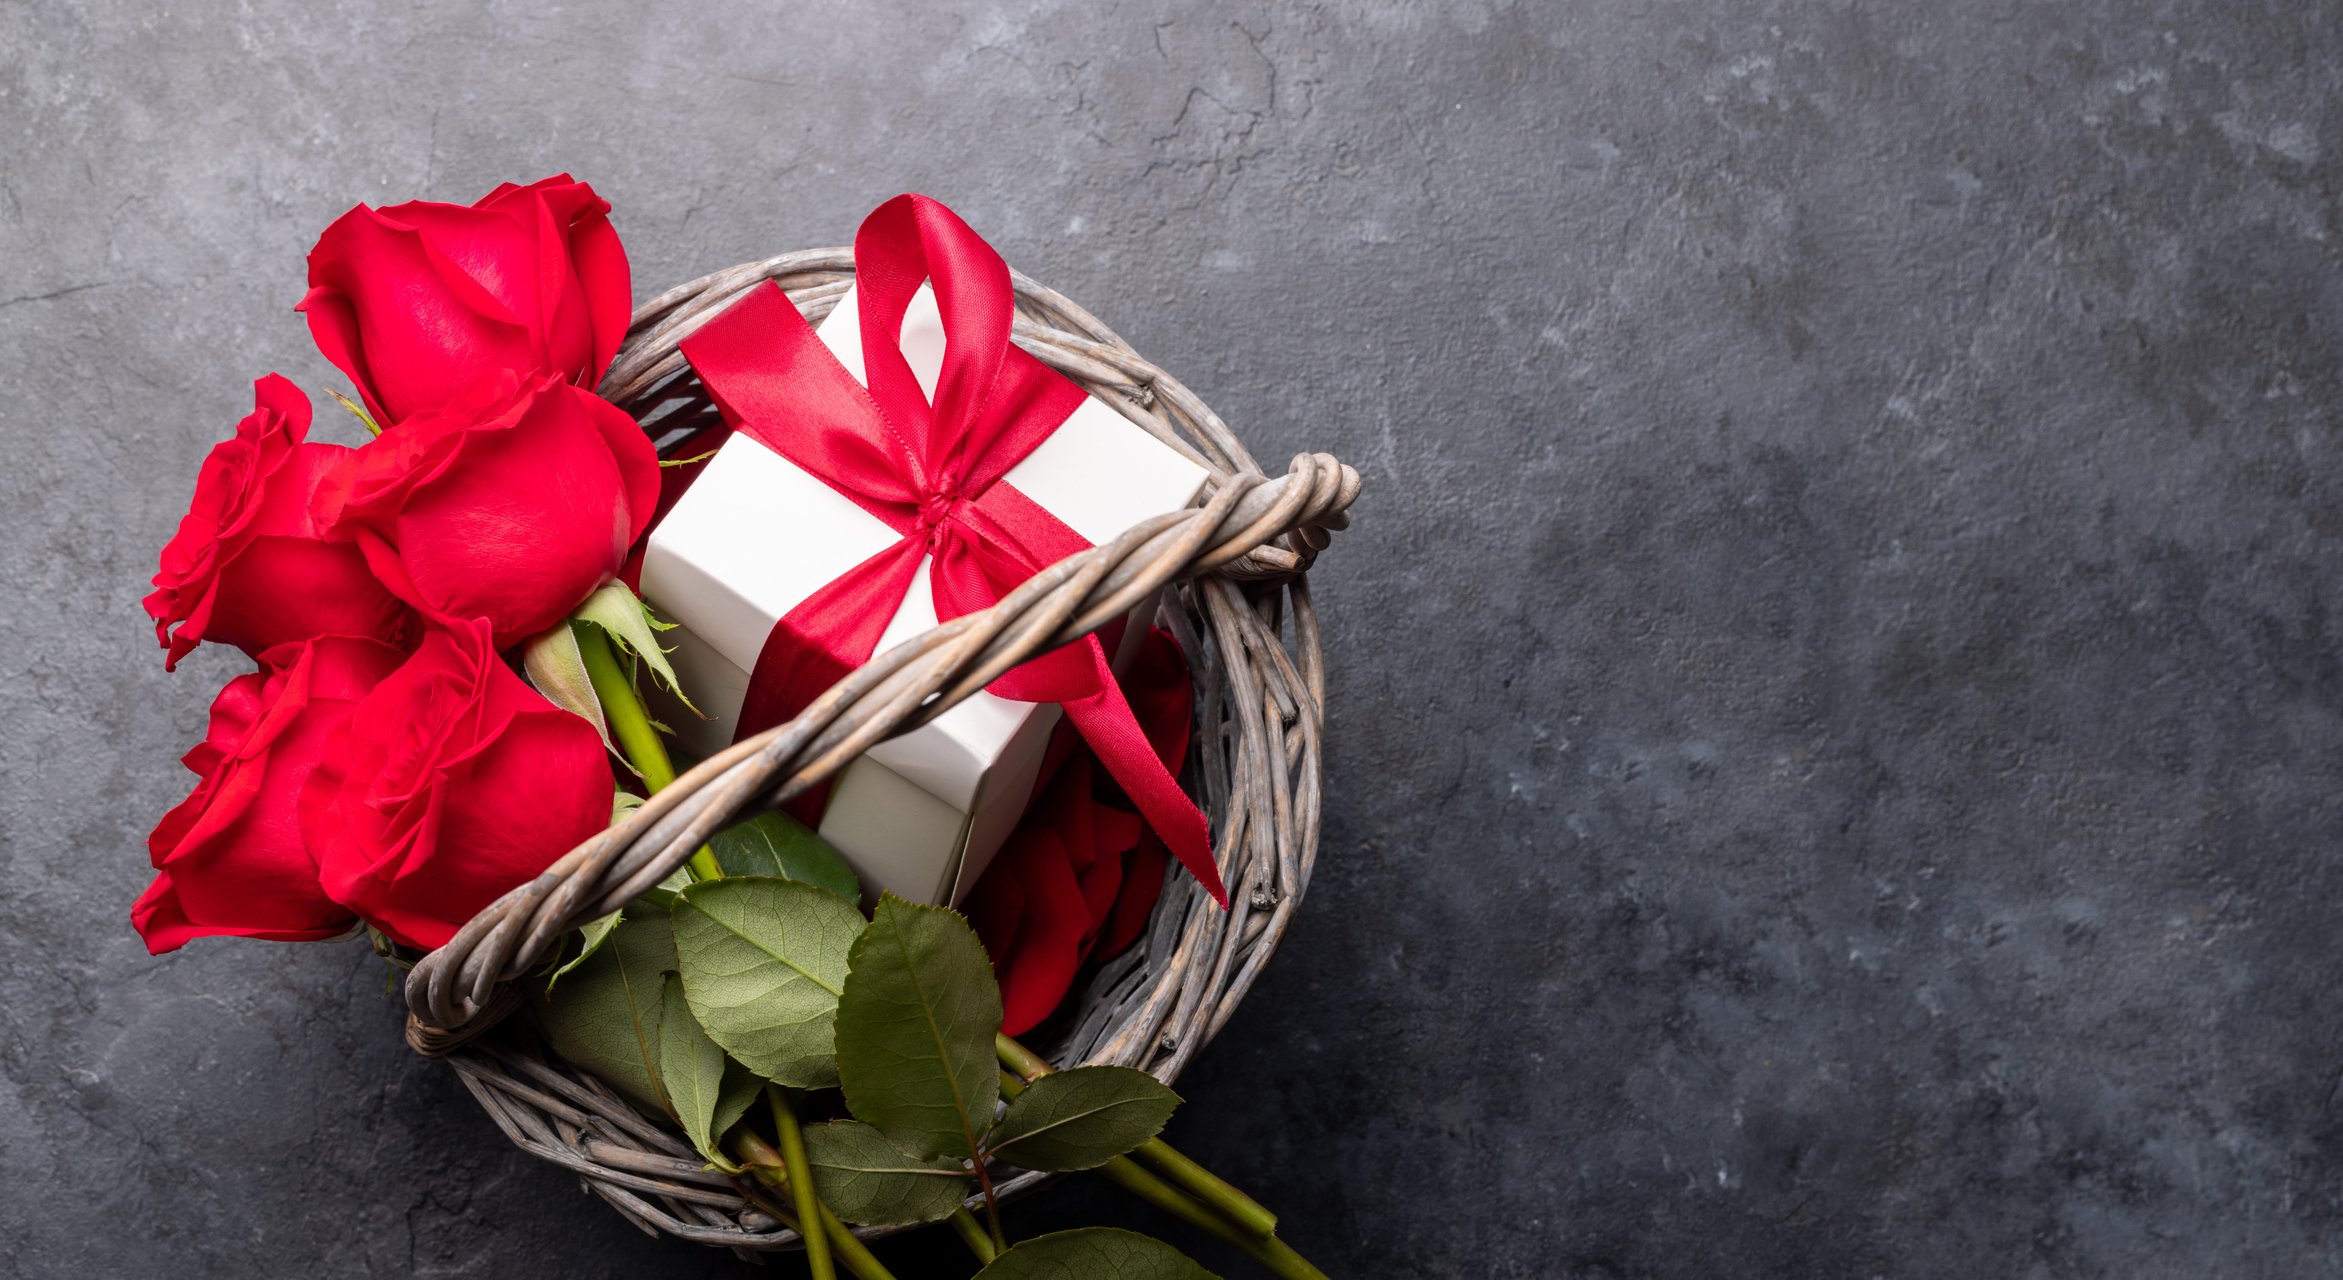 Αγίου Βαλεντίνου: Αυτές είναι οι 3 top ιδέες δώρων για να μην αφήσεις τη σύντροφό σου παραπονεμένη!